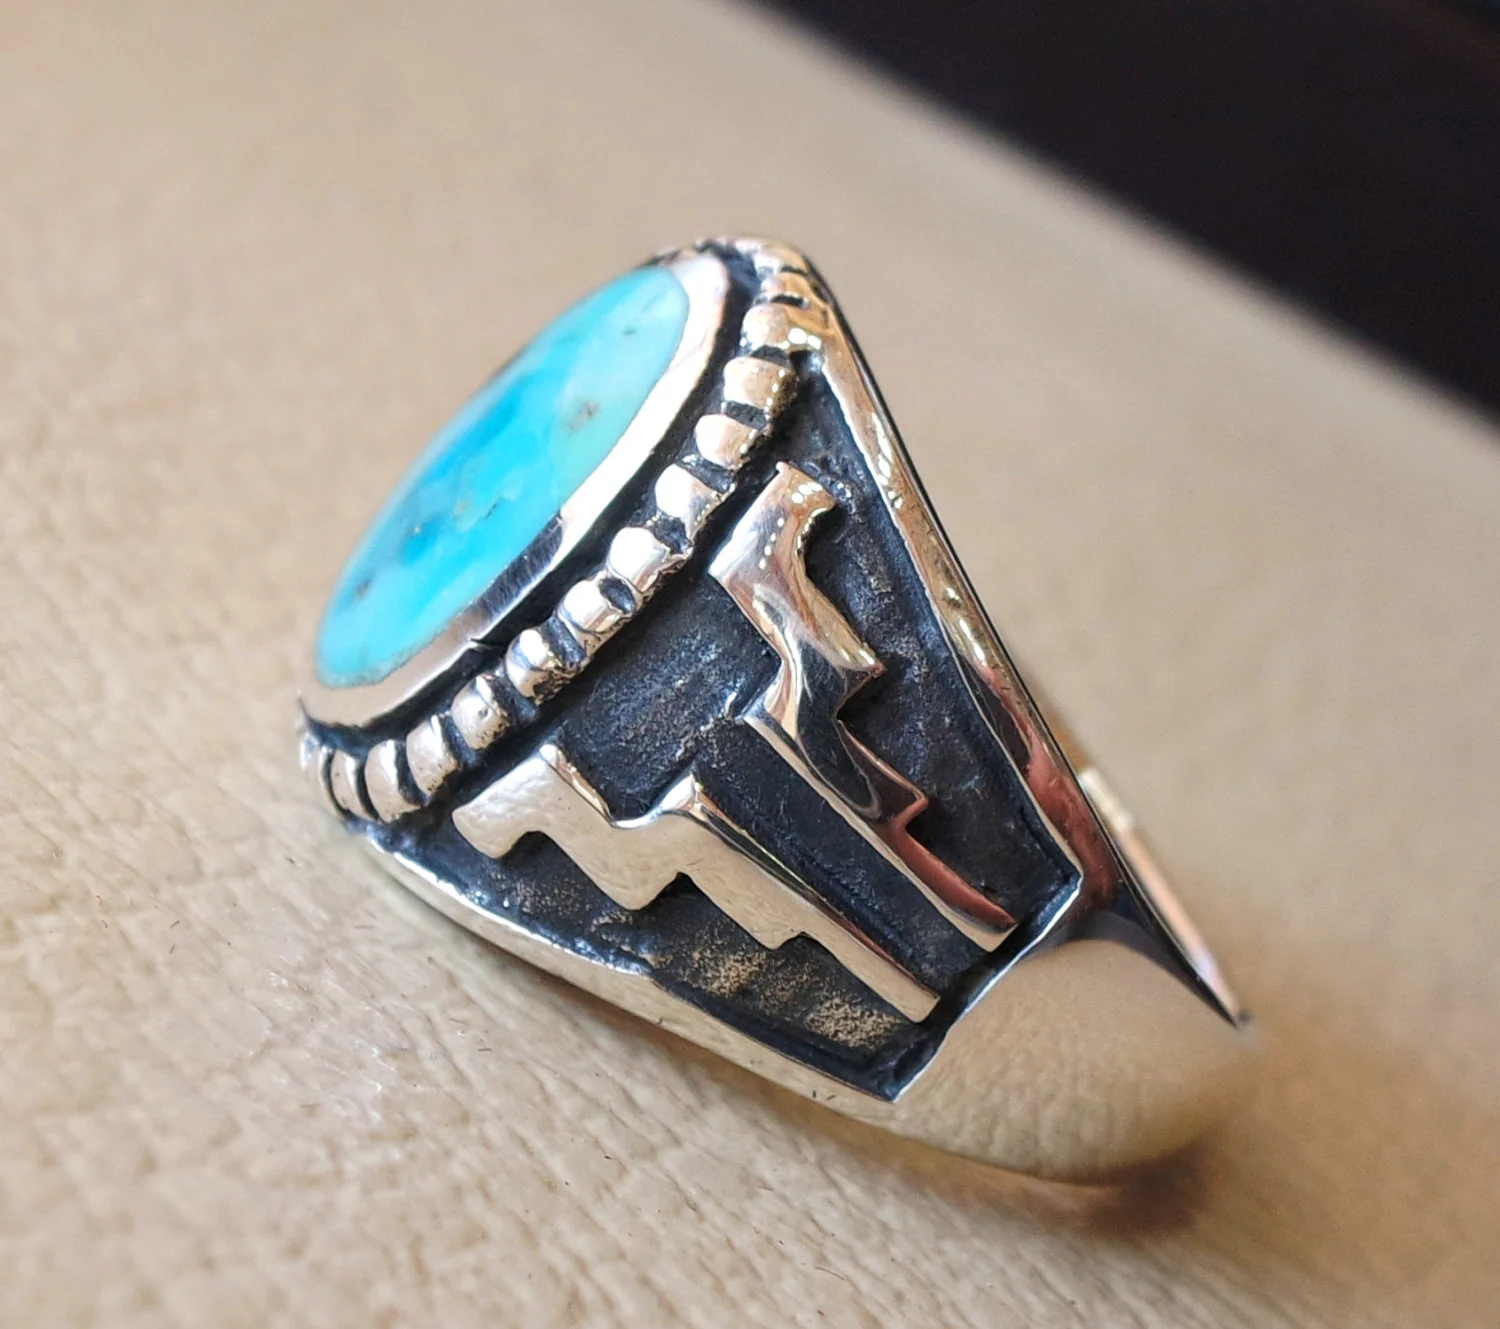 restructuré naturel turquoise ovale bleu Pierre Sterling argent 925 anneau de l'homme n'importe quelle taille moyen orientale bijoux de style ottoman